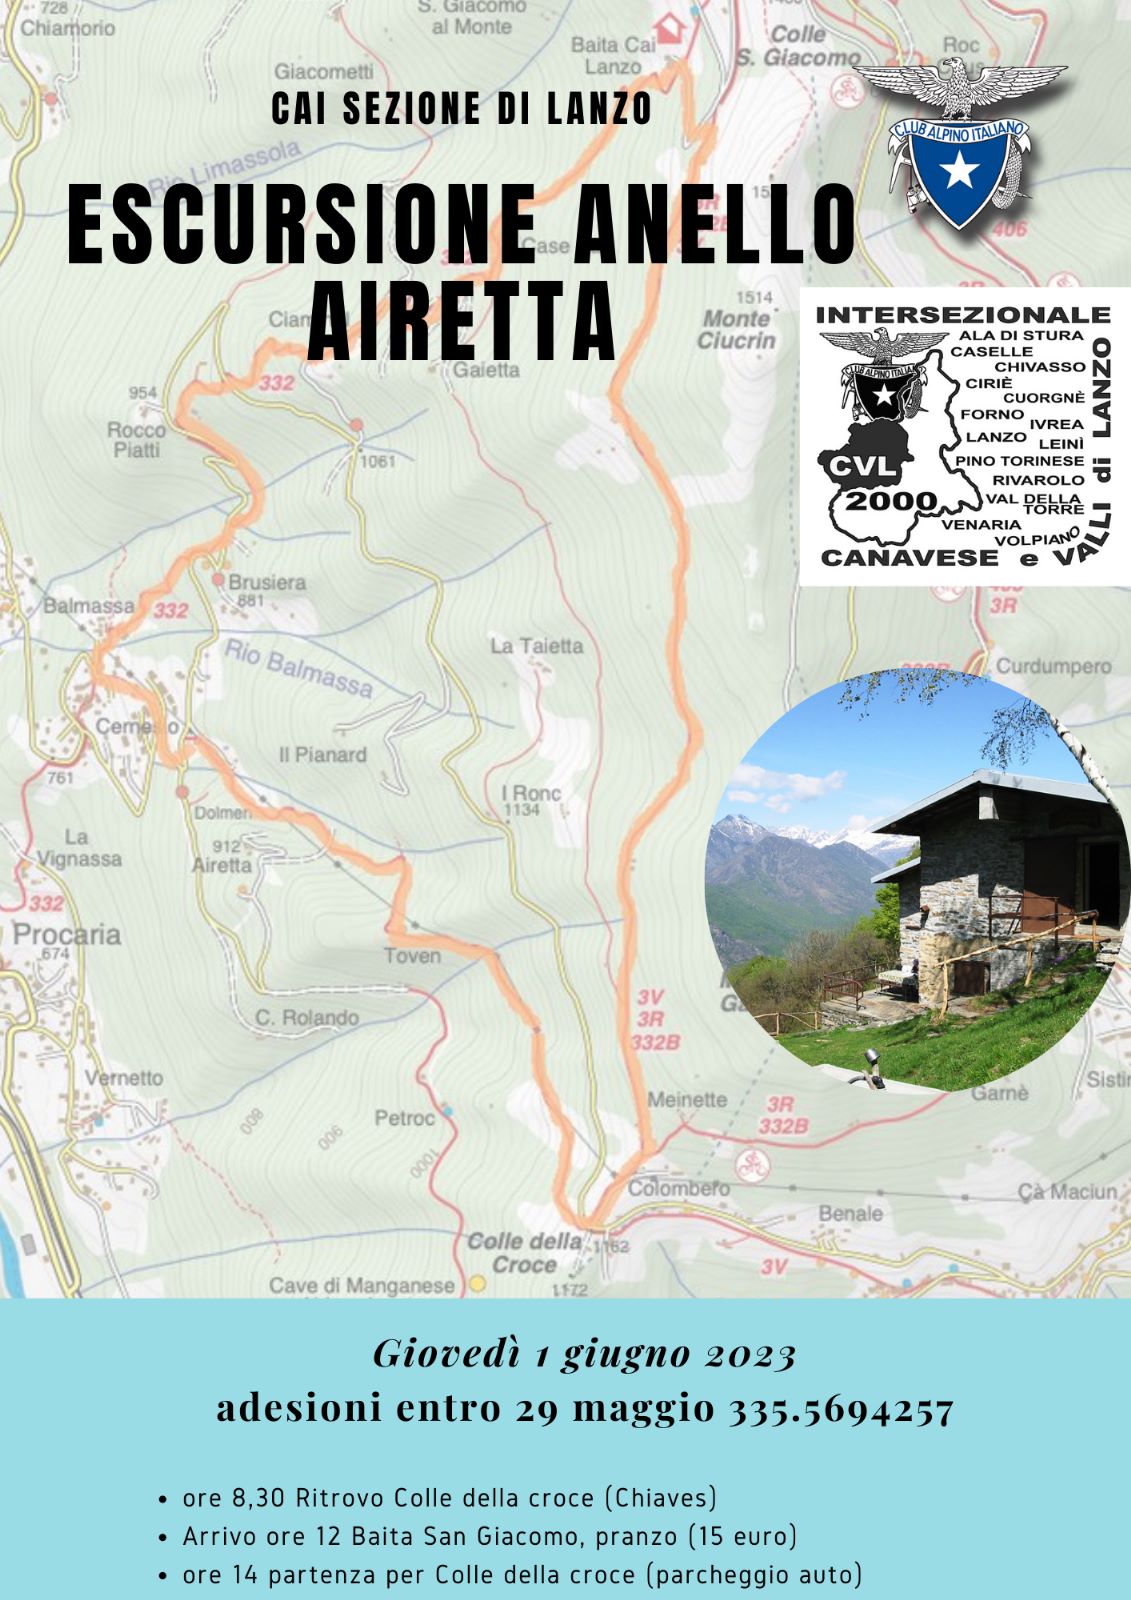 2023-06-01_LOCANDINA_cvl_anello_airetta1.jpg